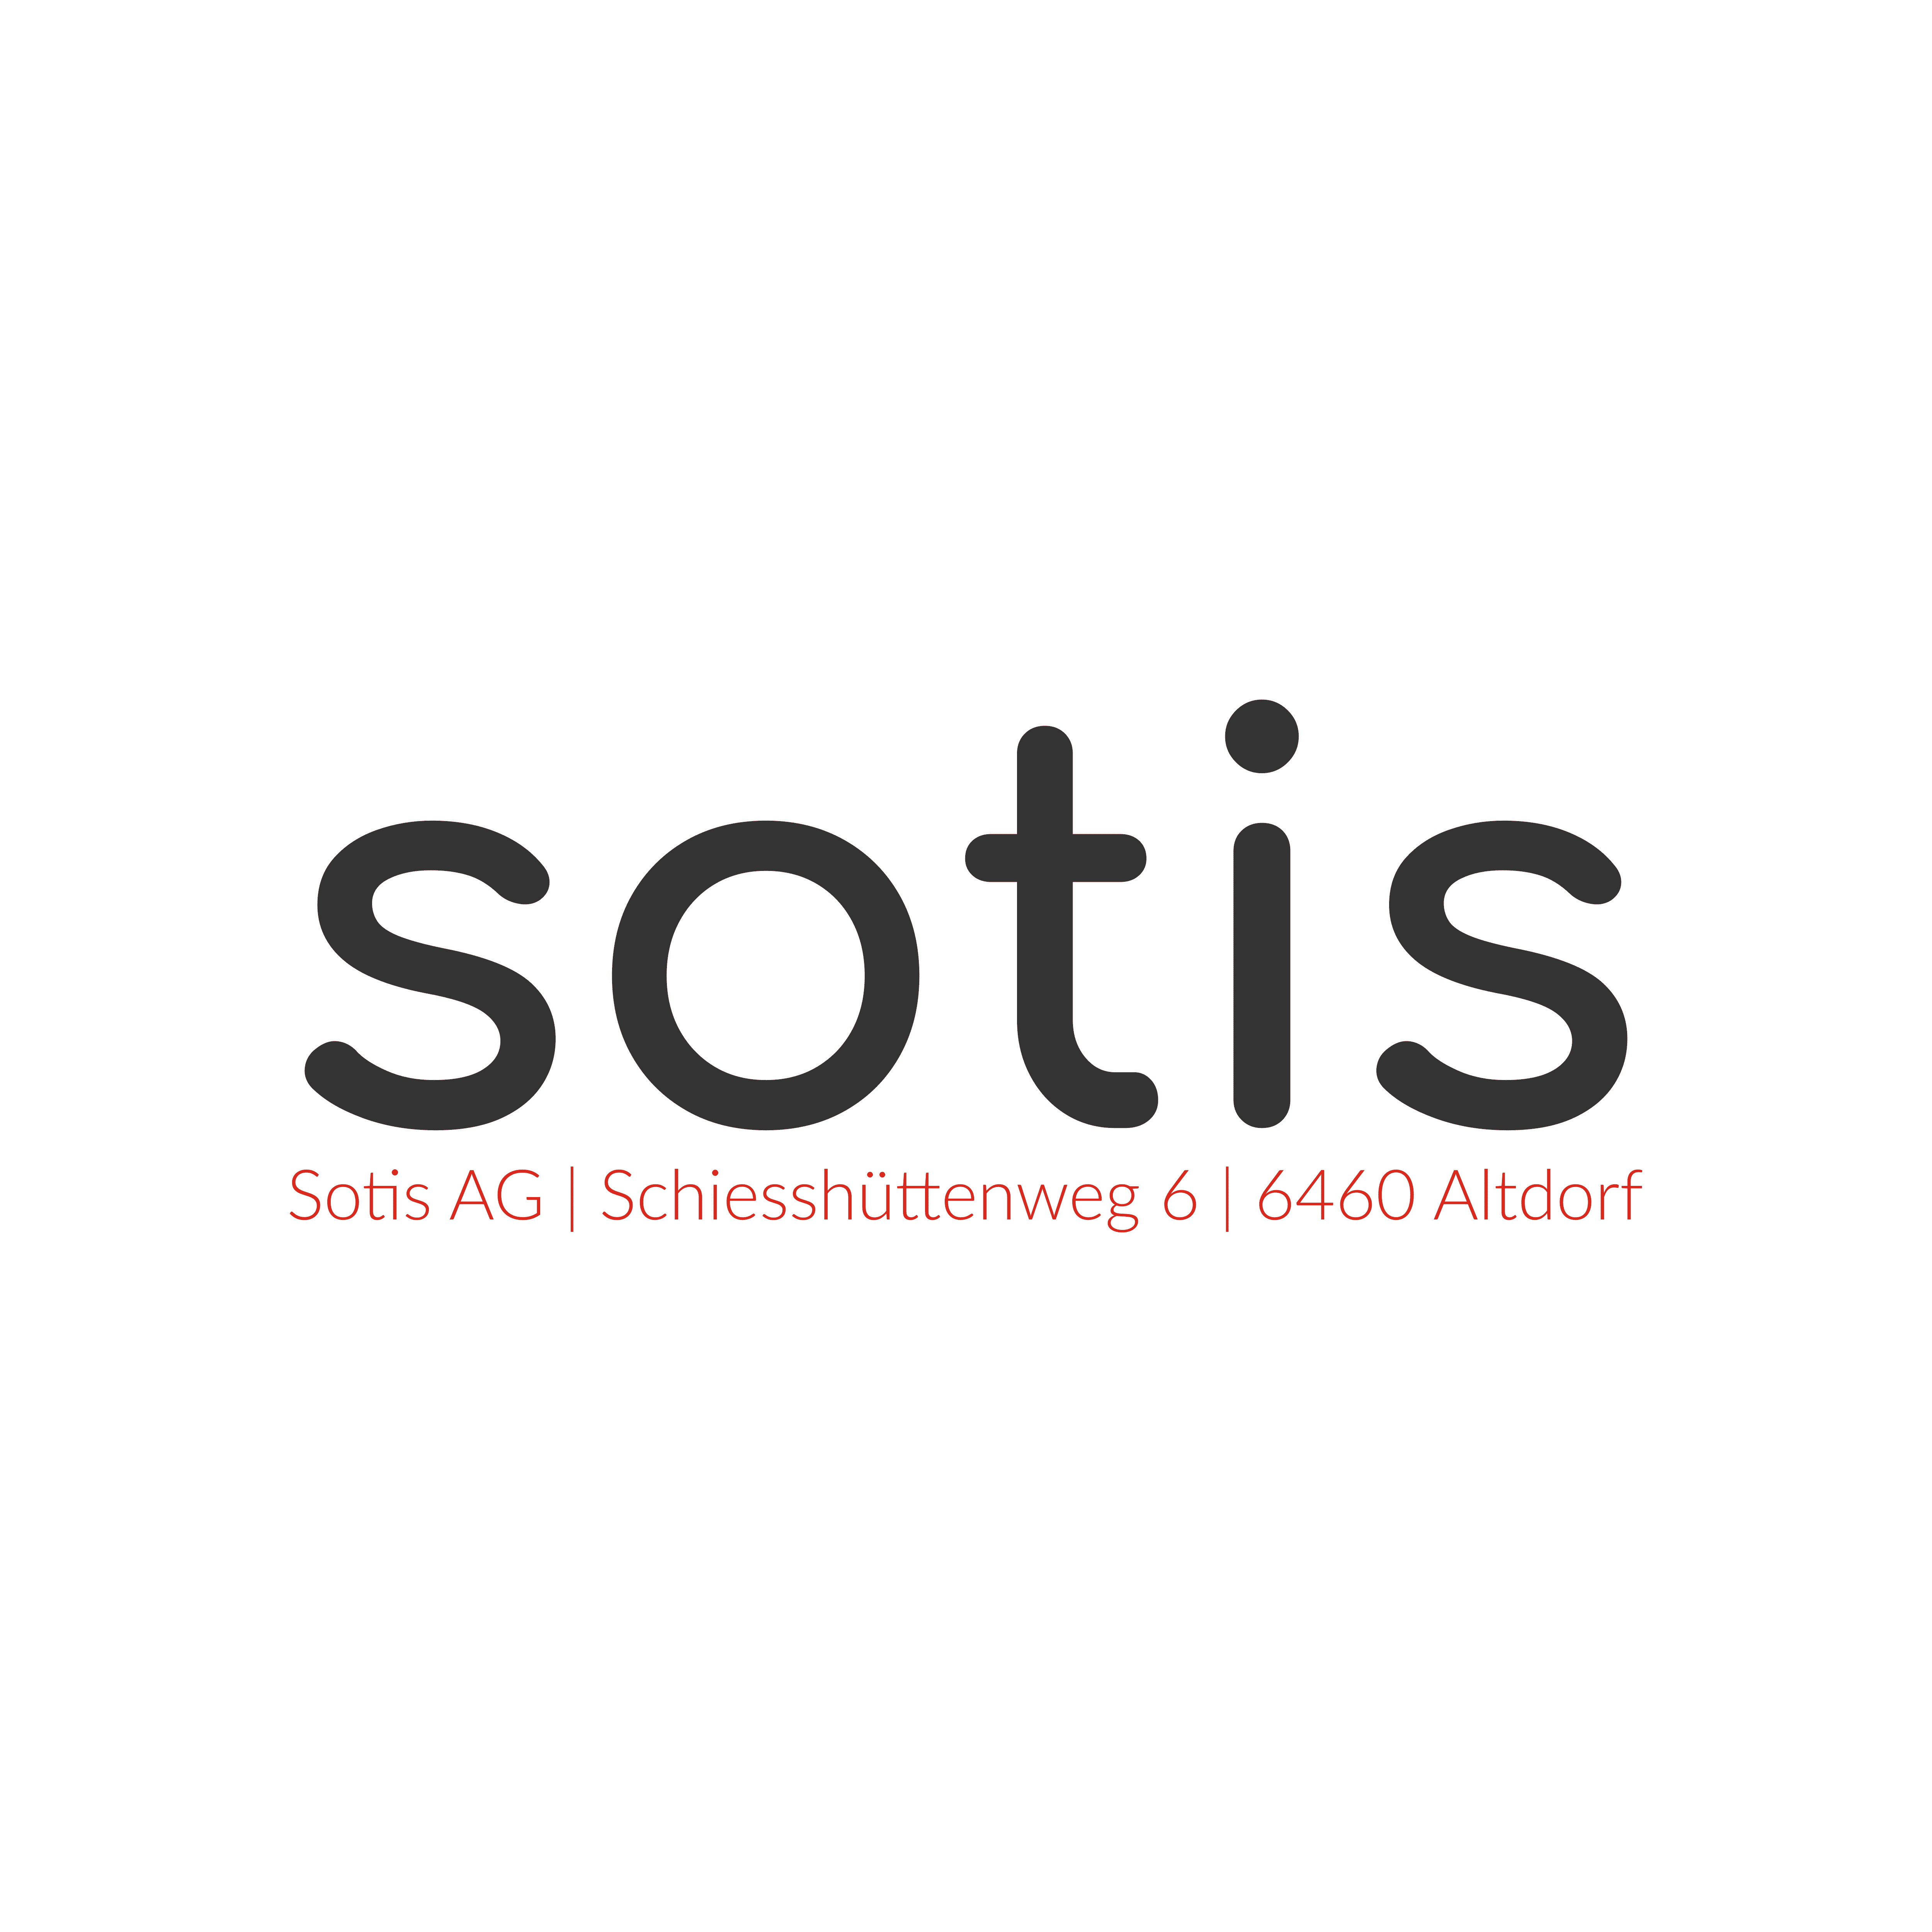 Sotis AG